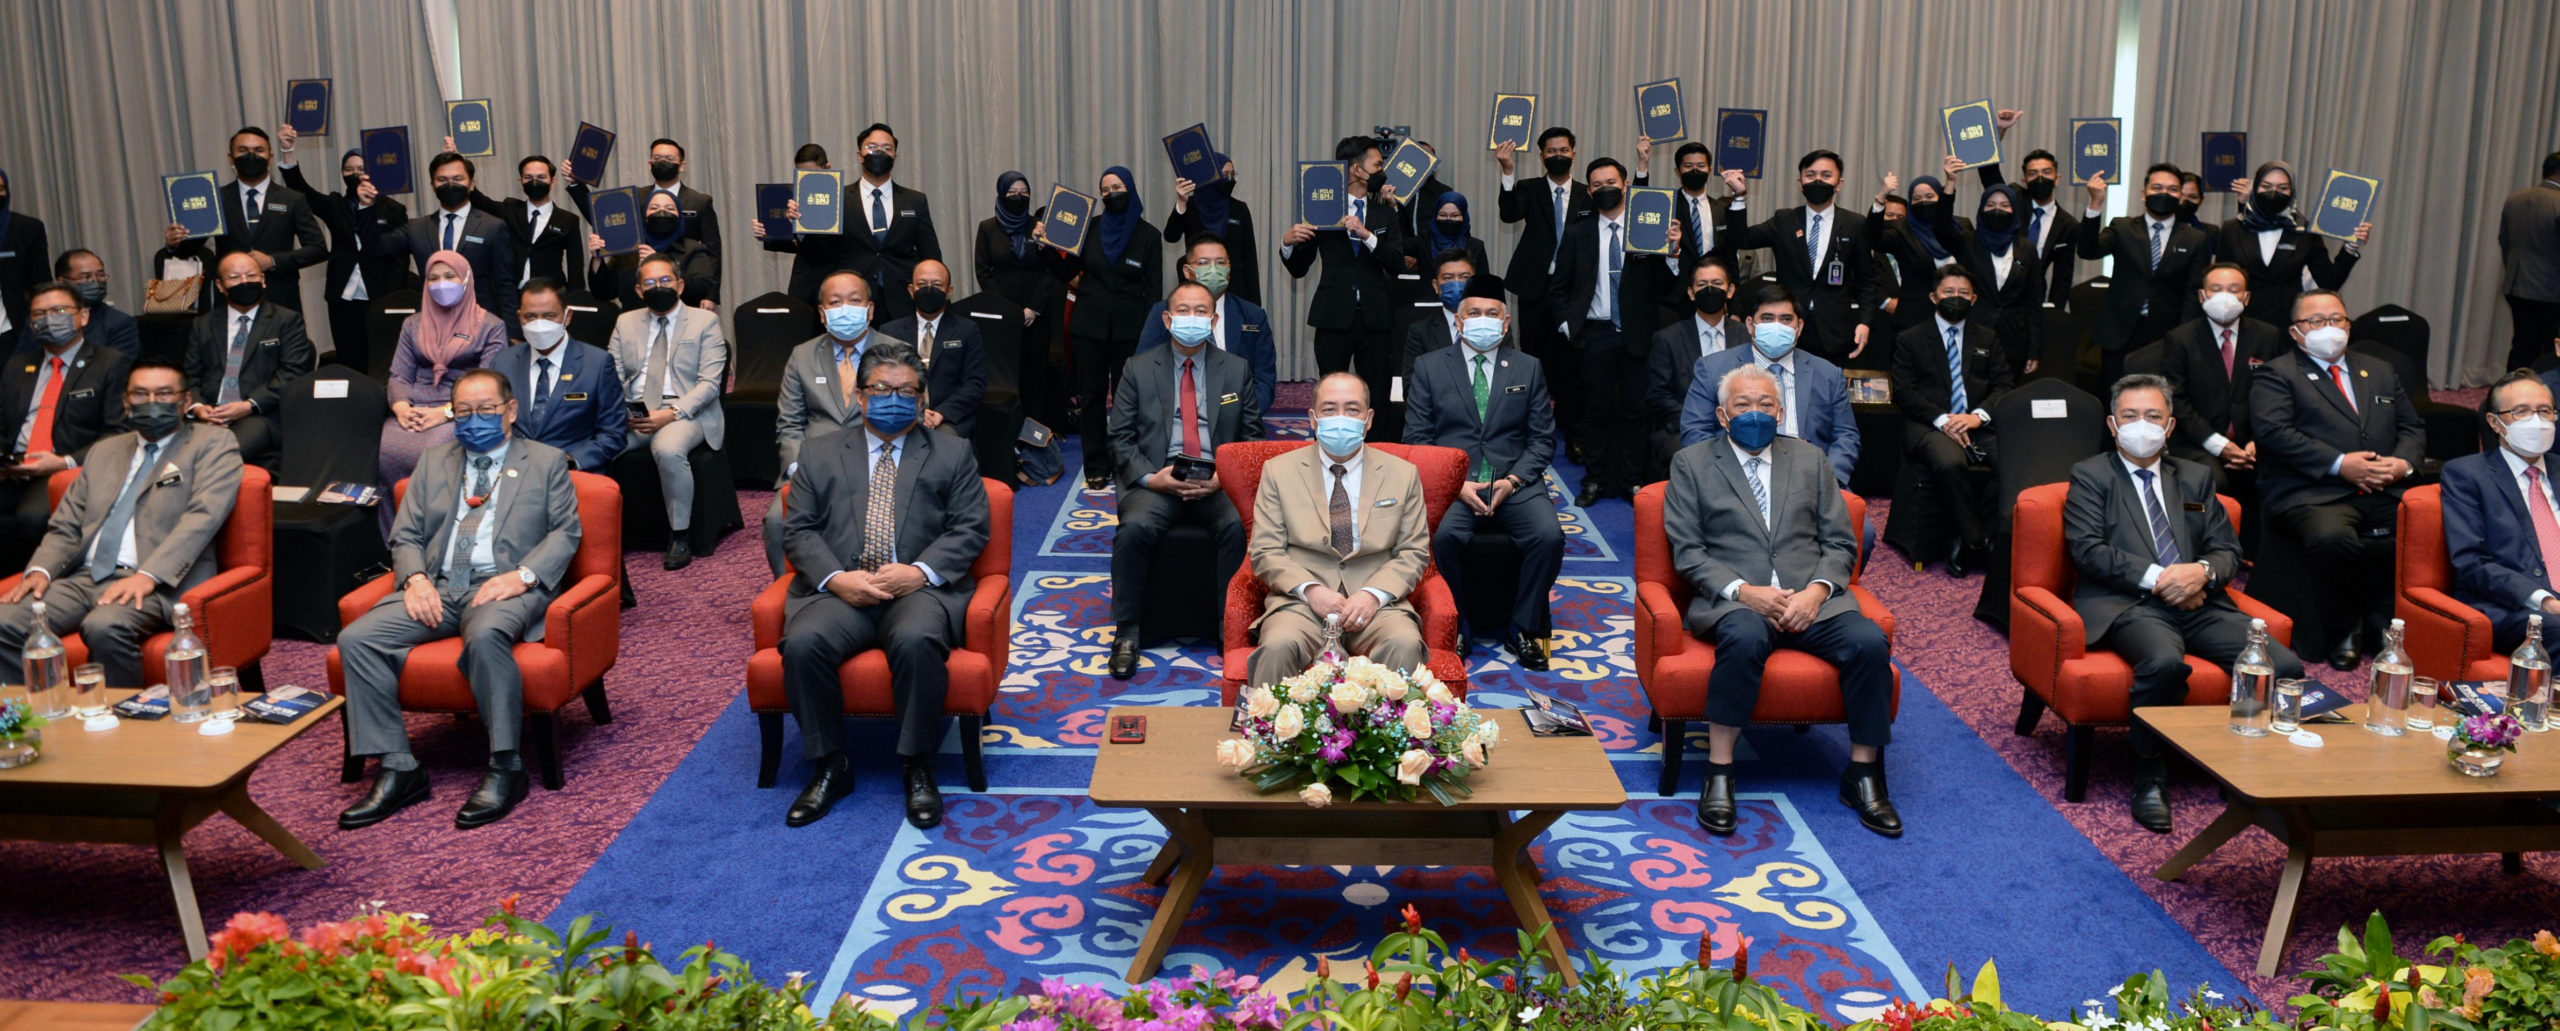 Ketua Menteri Datuk Seri Hajiji Noor (duduk tengah) dan menteri kabinet bersama 24 peserta Felo SMJ di latar belakang menunjukkan surat pelantikan mereka.